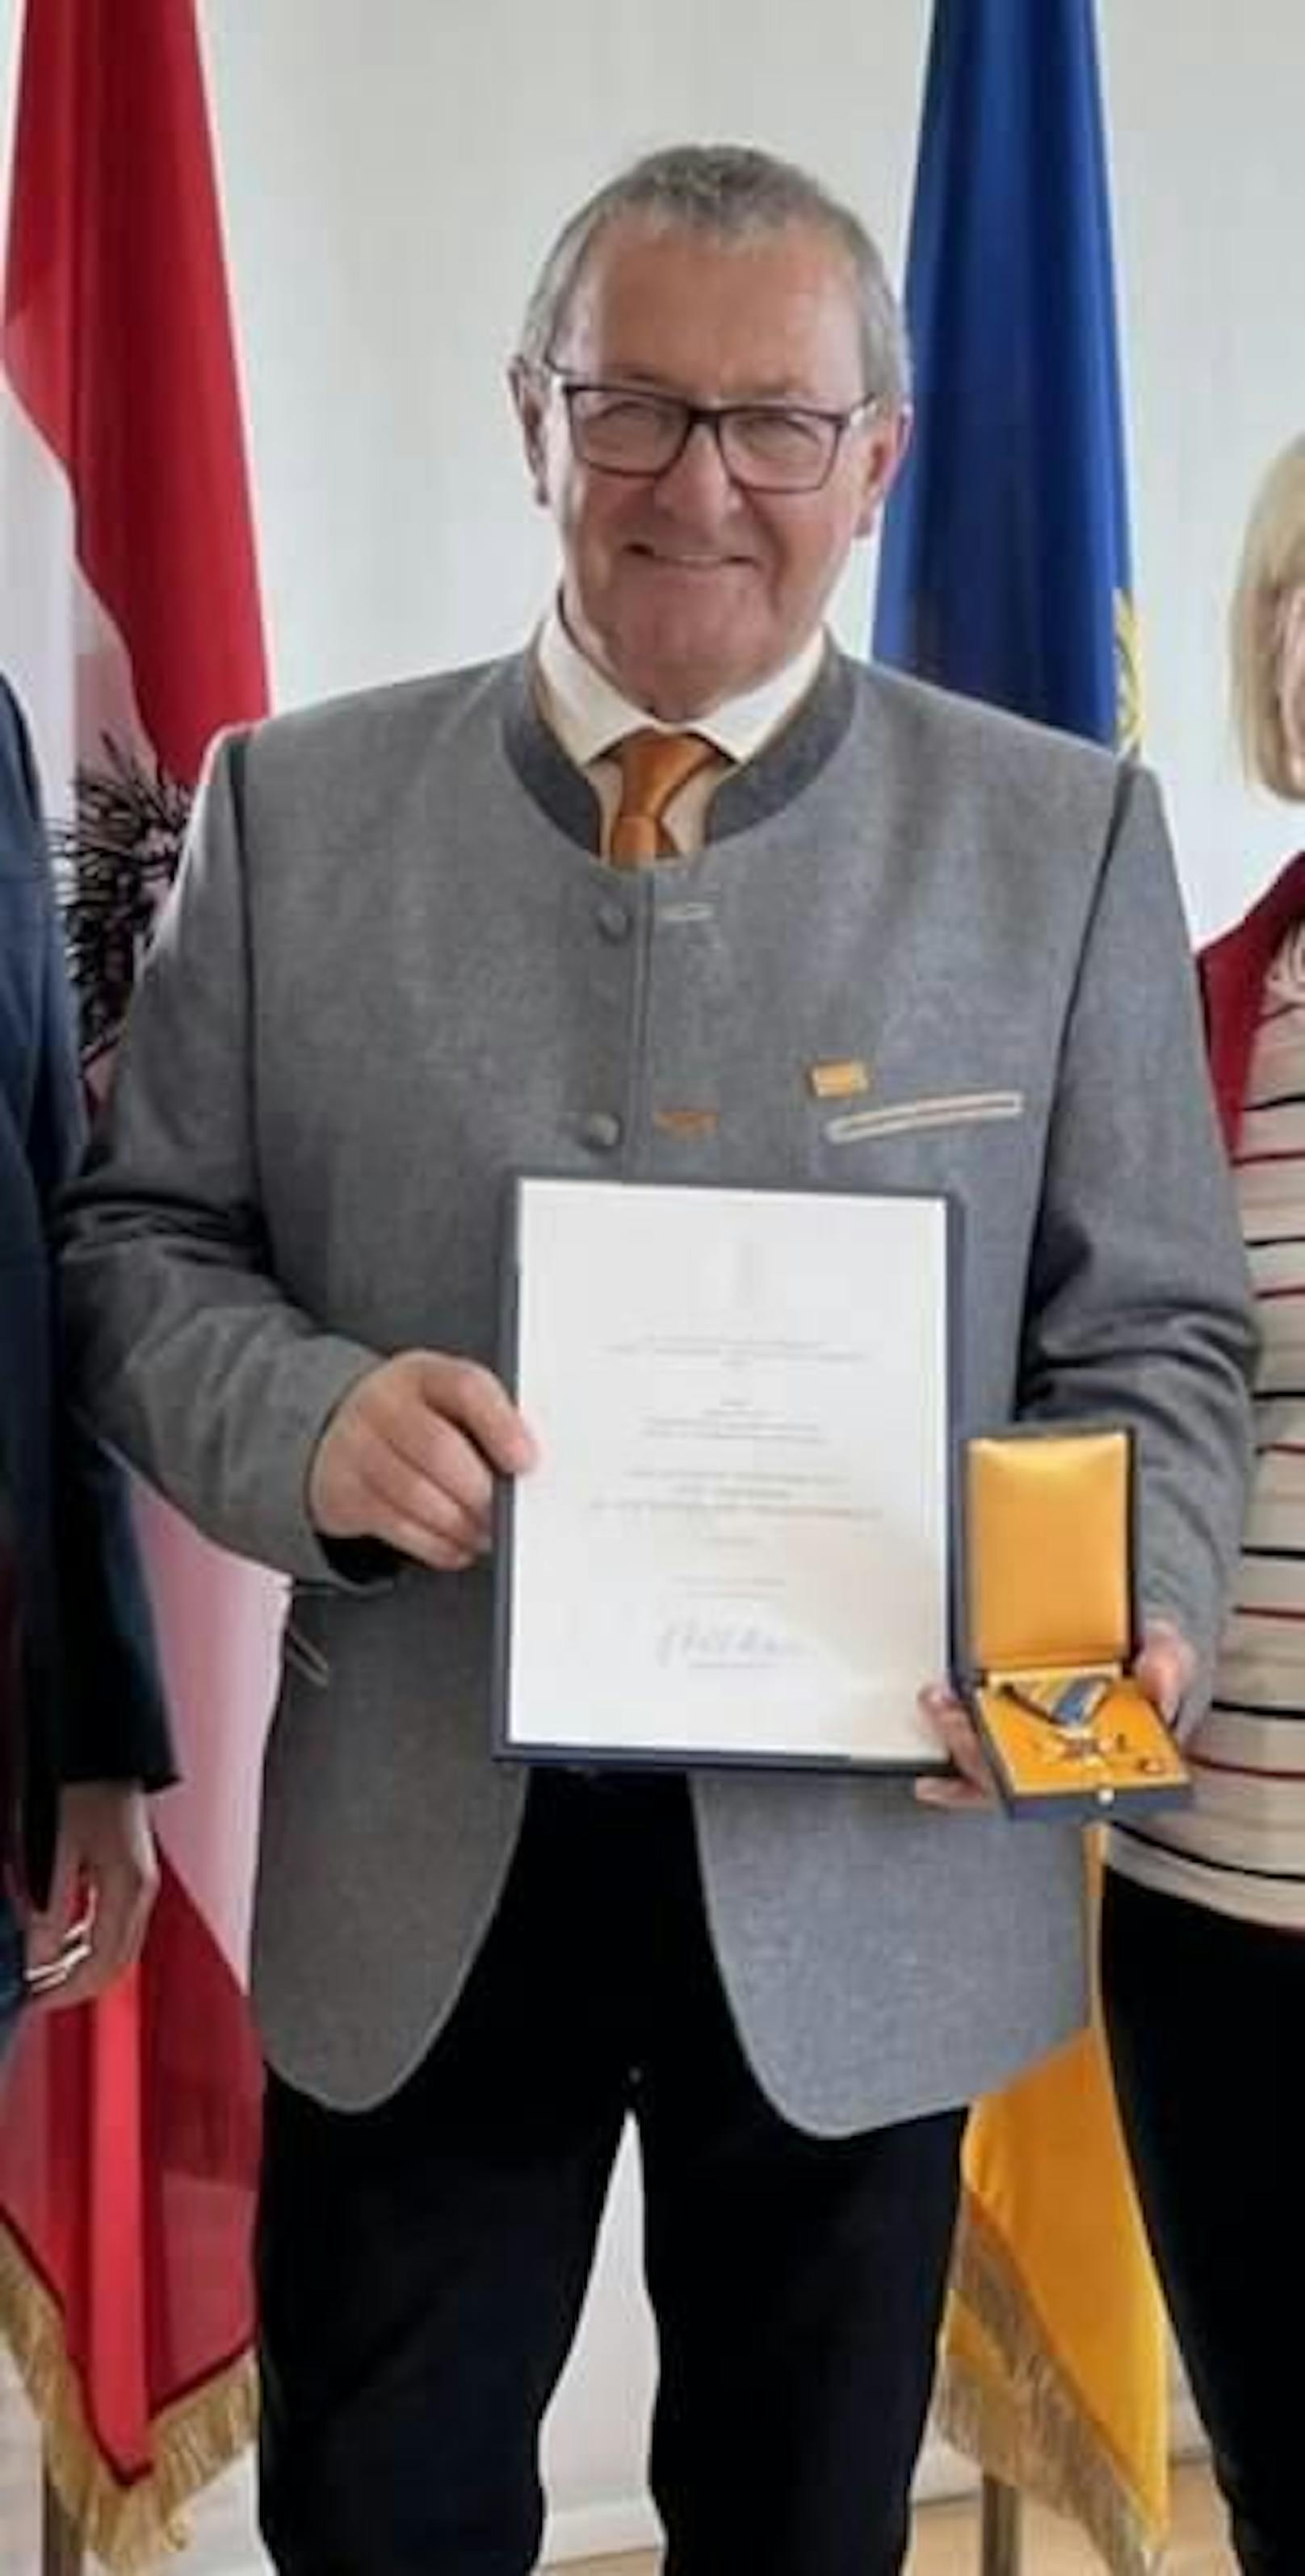 Bürgermeister Johann Bauer bei einer Auszeichnung des Landes NÖ - er kann auch anders, wie ein Video beweist.